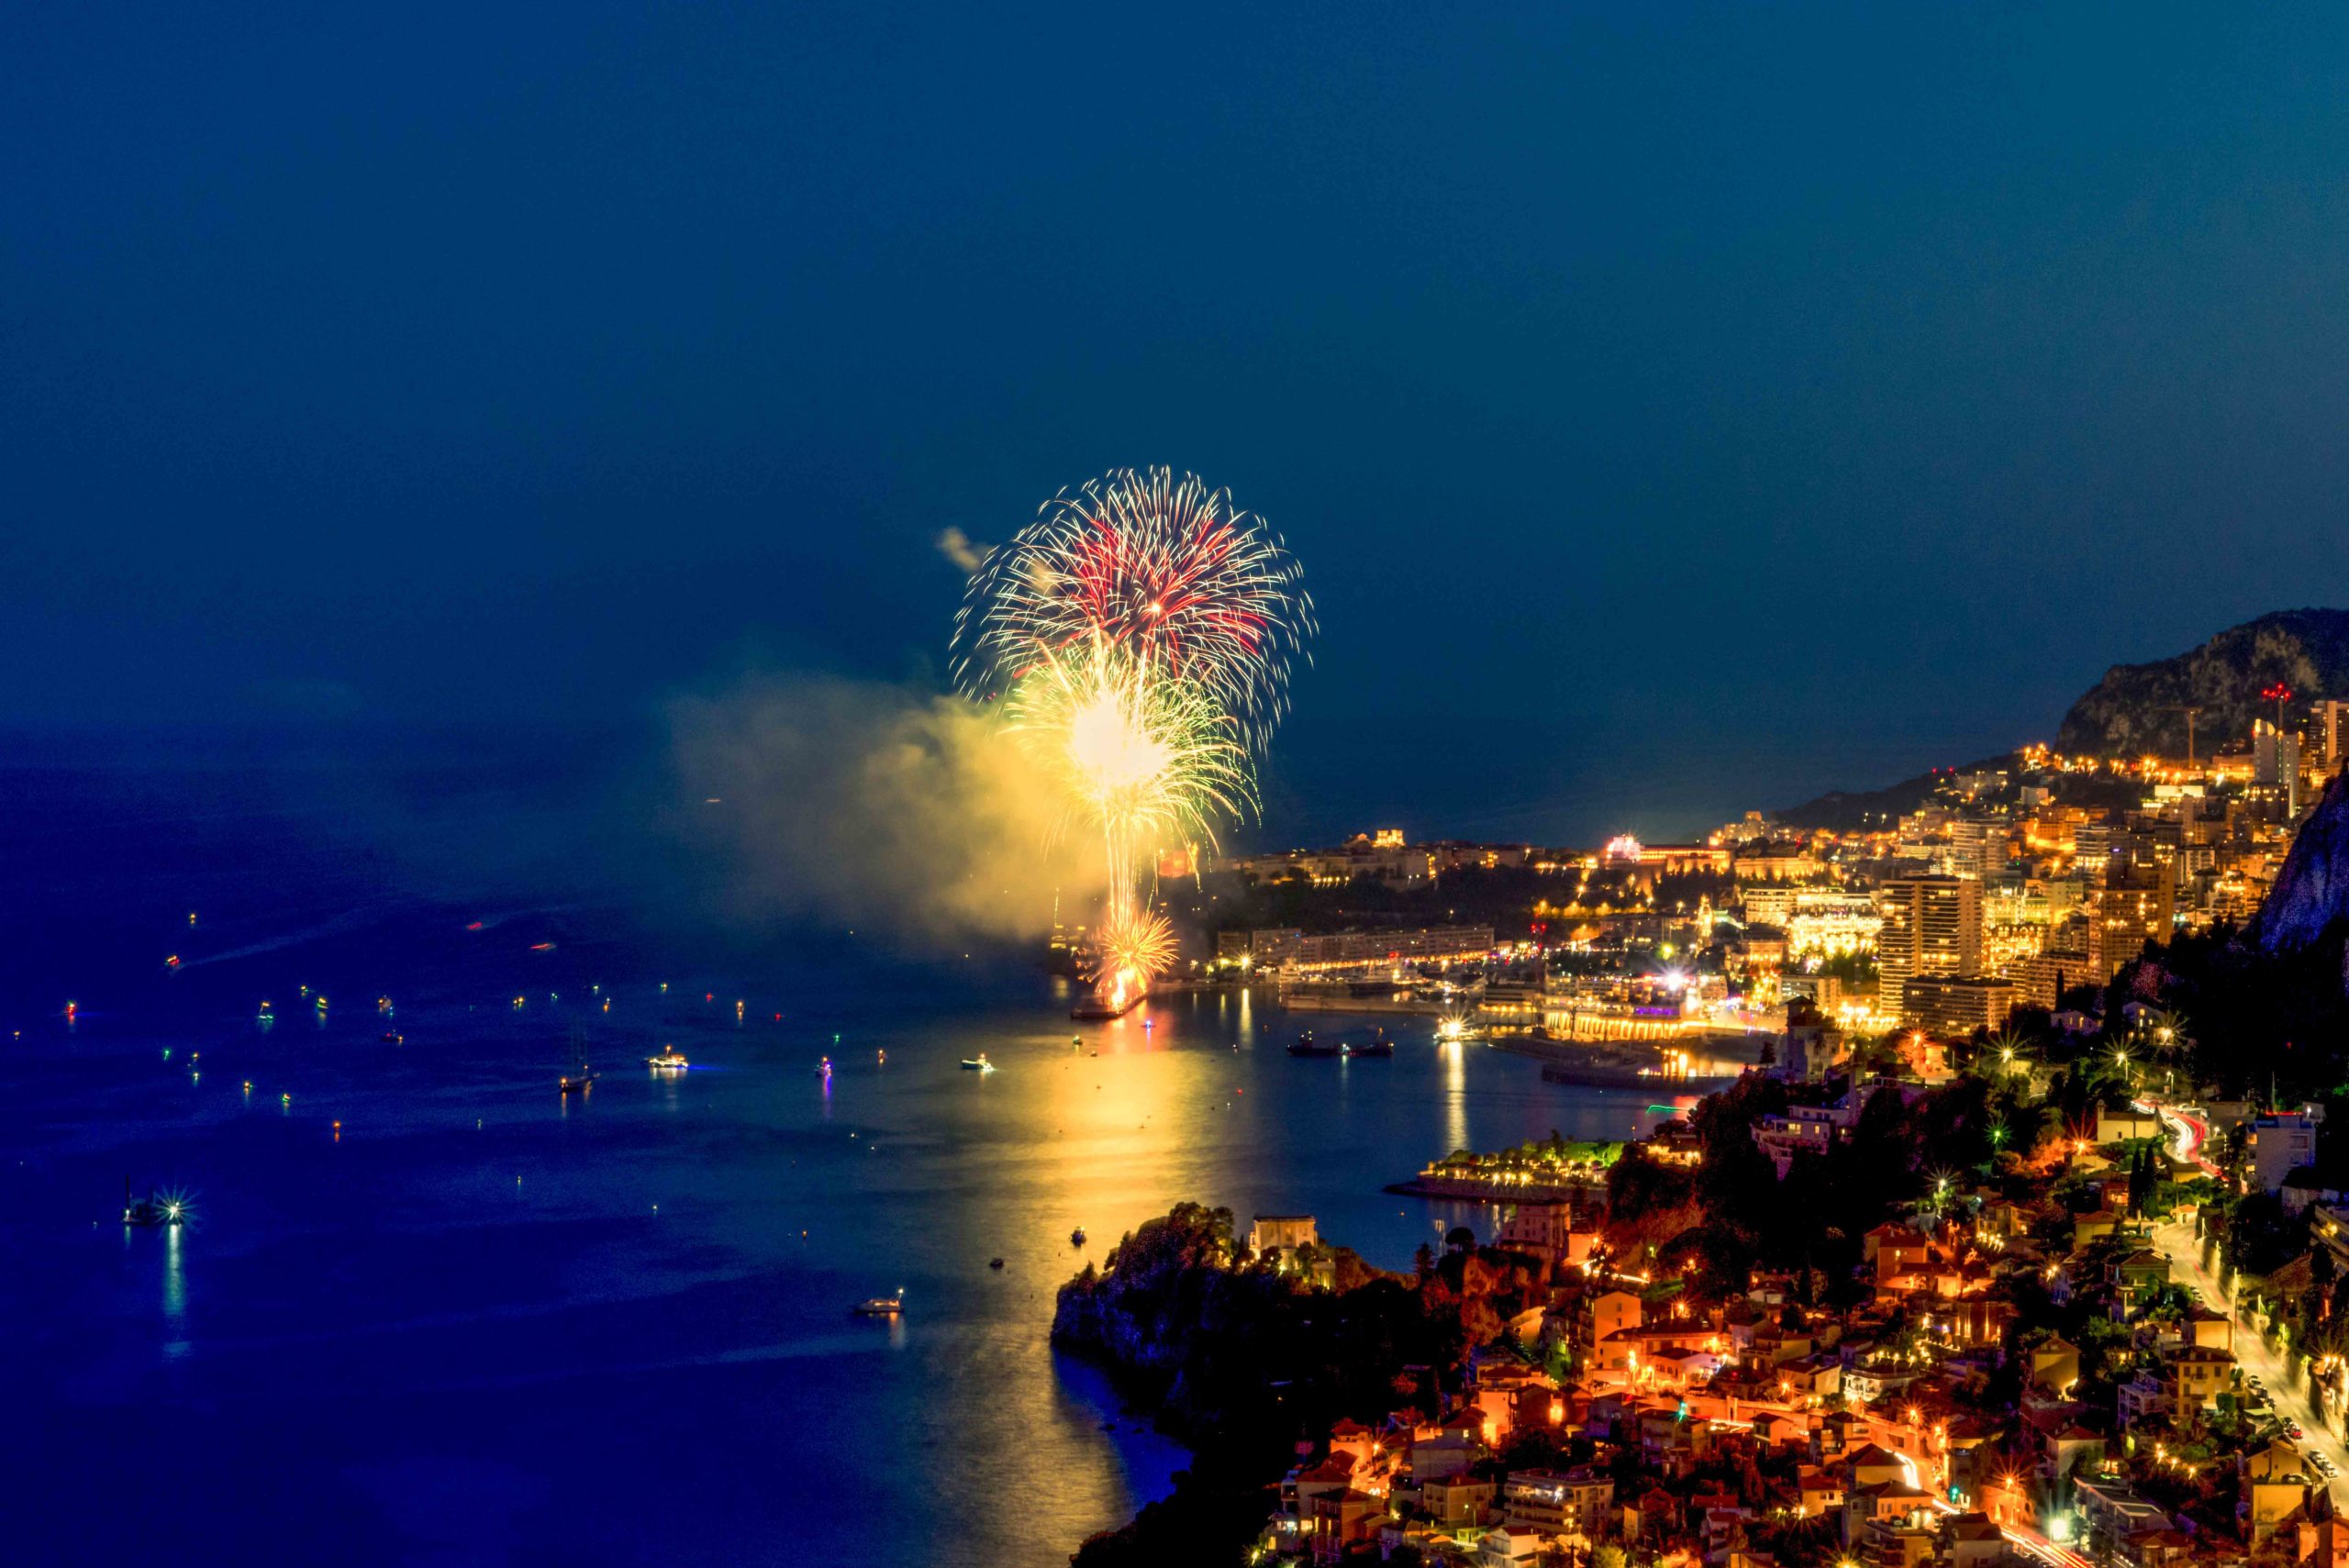 Monaco Fireworks @sergiopazzano78 via Twenty20